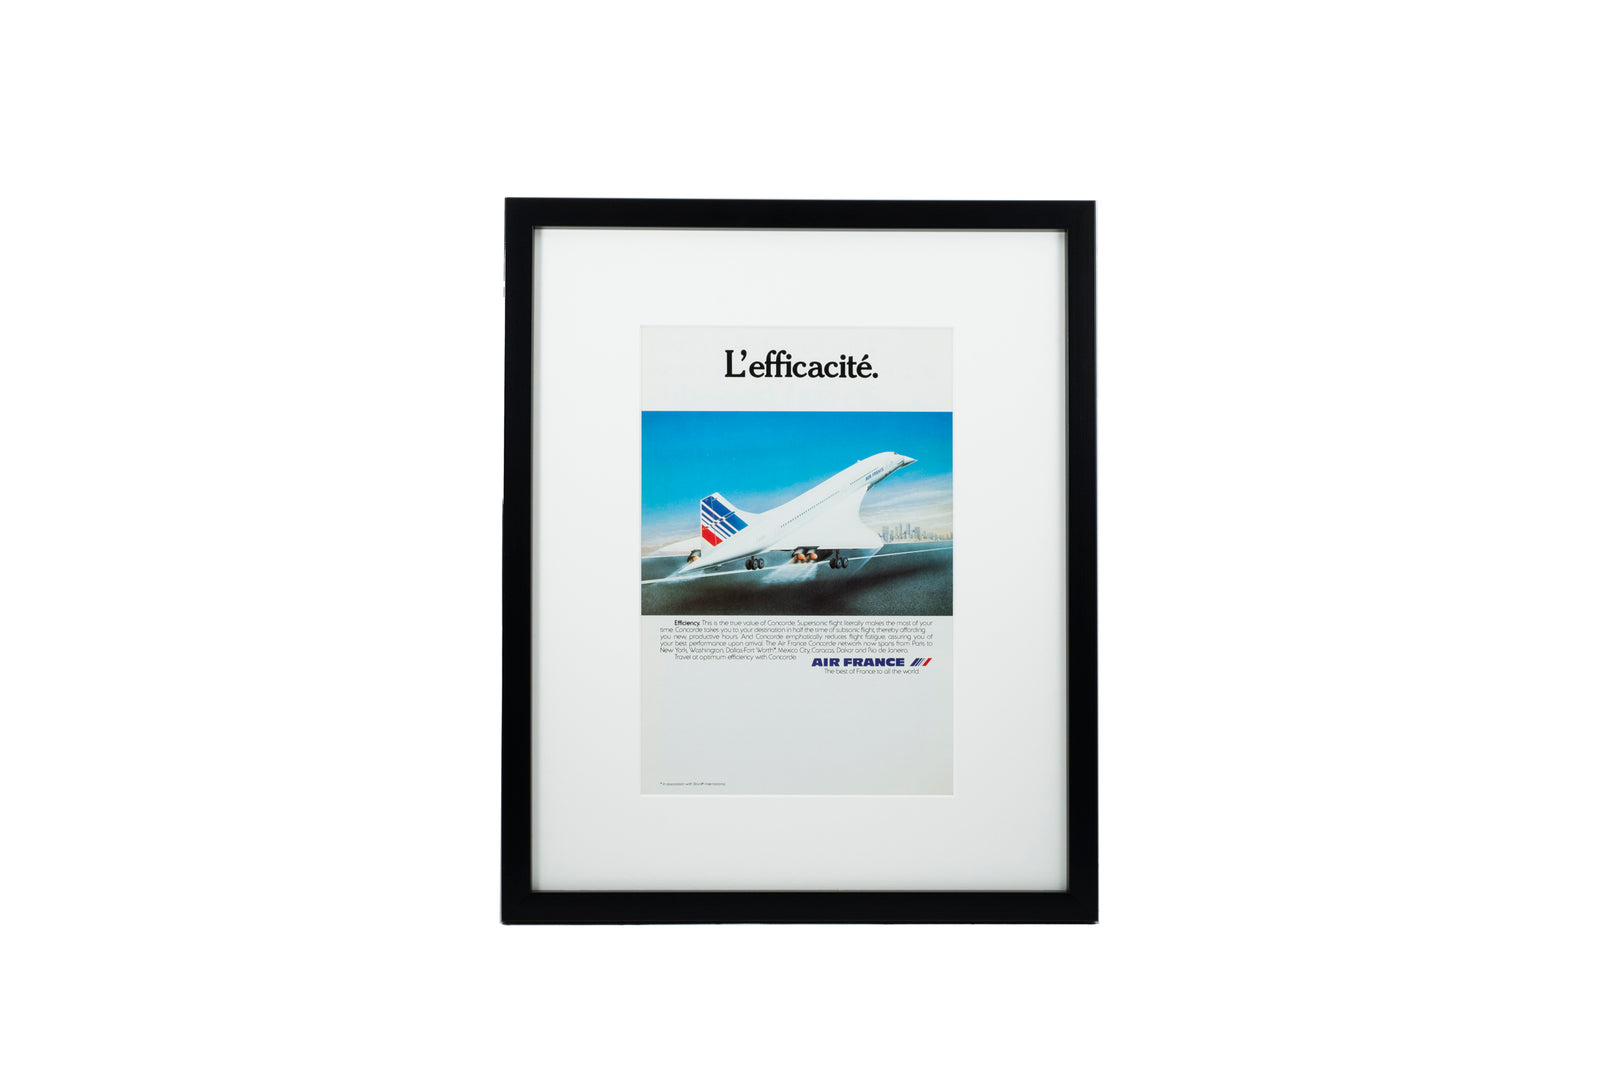 Air France Concorde 'L'efficacite'